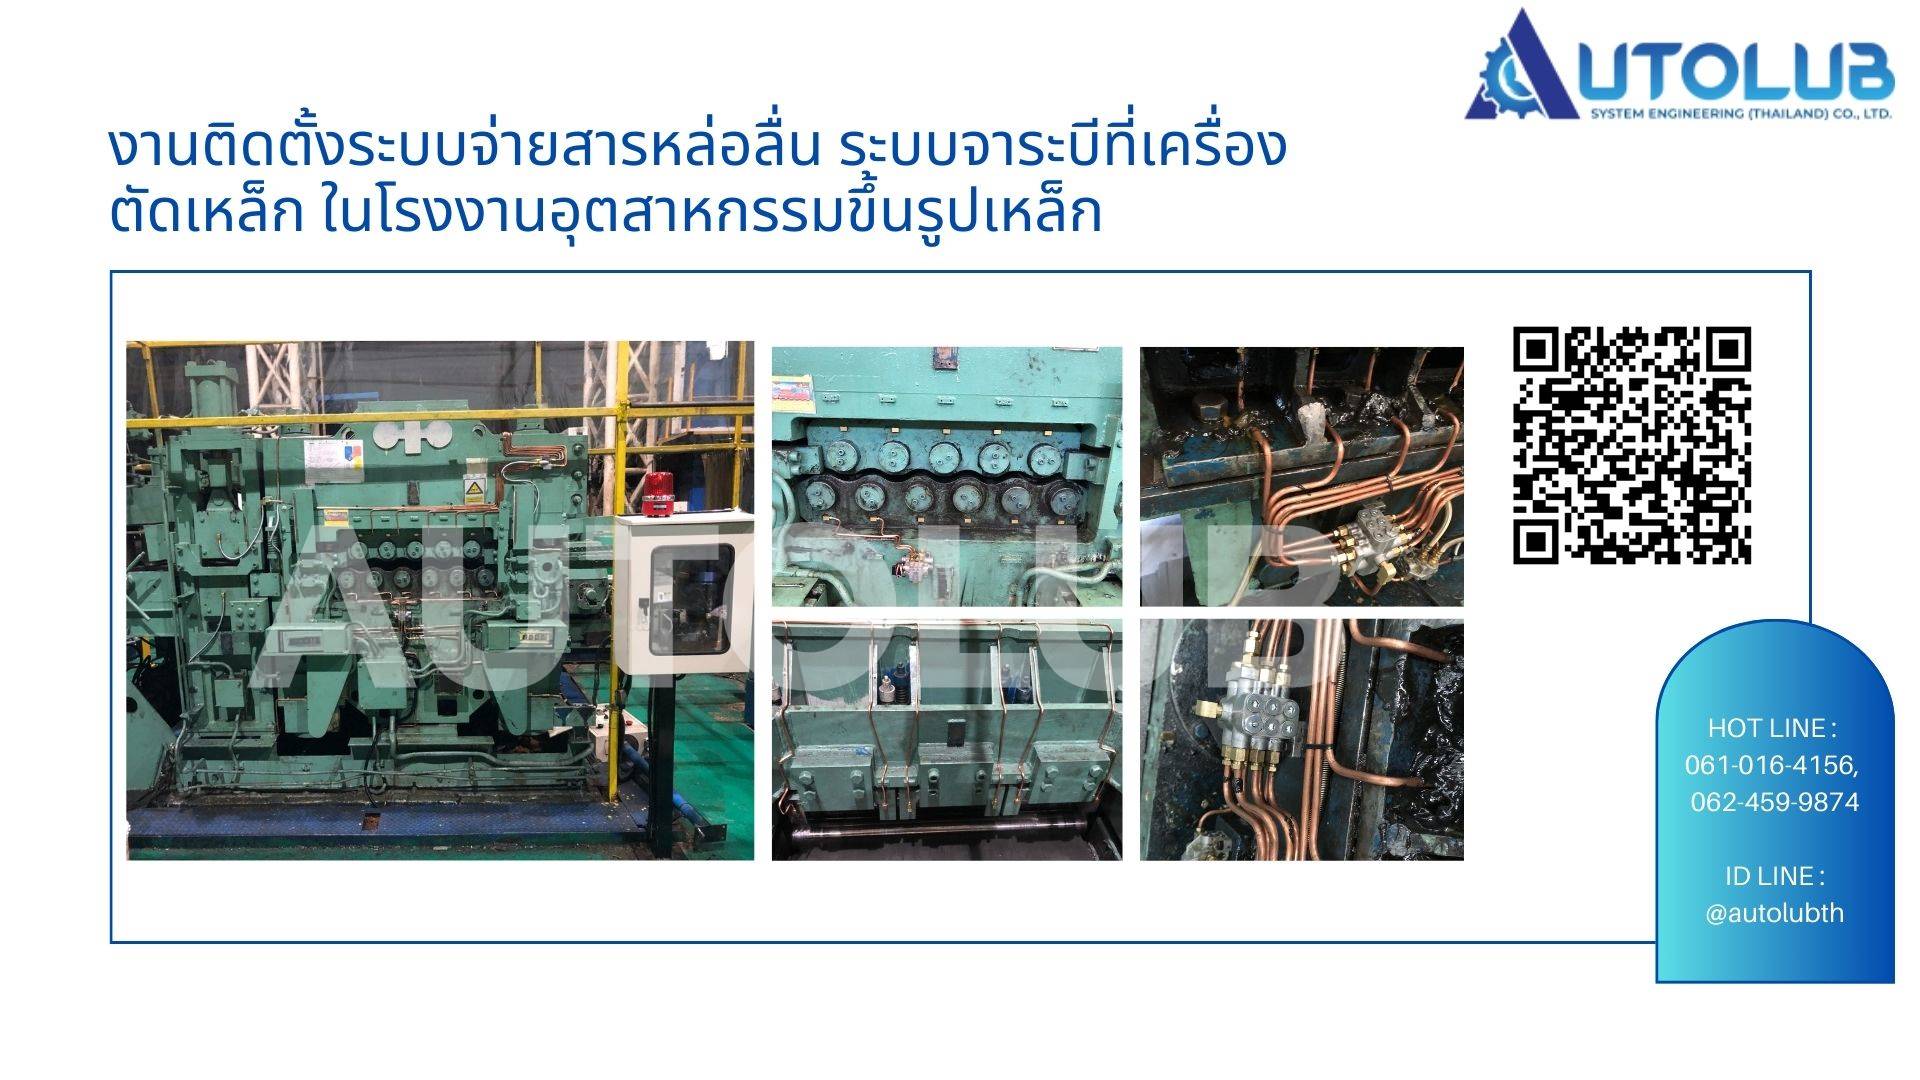 งานติดตั้งระบบจ่ายสารหล่อลื่น ระบบจาระบีที่เครื่องตัดเหล็ก ในโรงงานอุตสาหกรรมขึ้นรูปเหล็ก